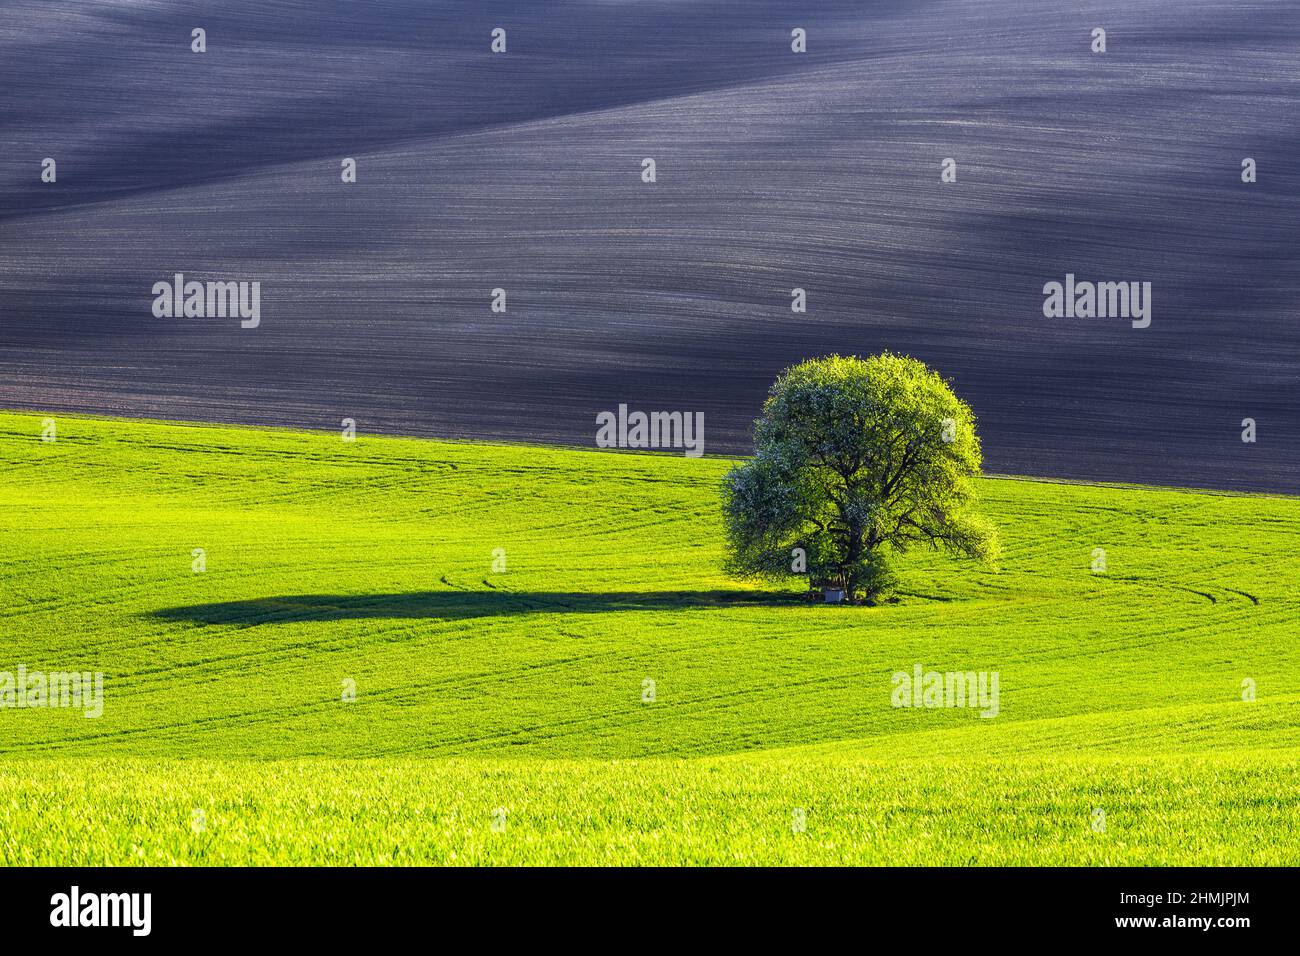 Es gibt einen einsamen üppigen Baum auf dem Rasen, der mit grünen Blättern bedeckt ist. Schwarzes Feld. Schöner Ort Mähren, Tschechische republik. Schöne Frühlingslandschaft. Blumen Stockfoto